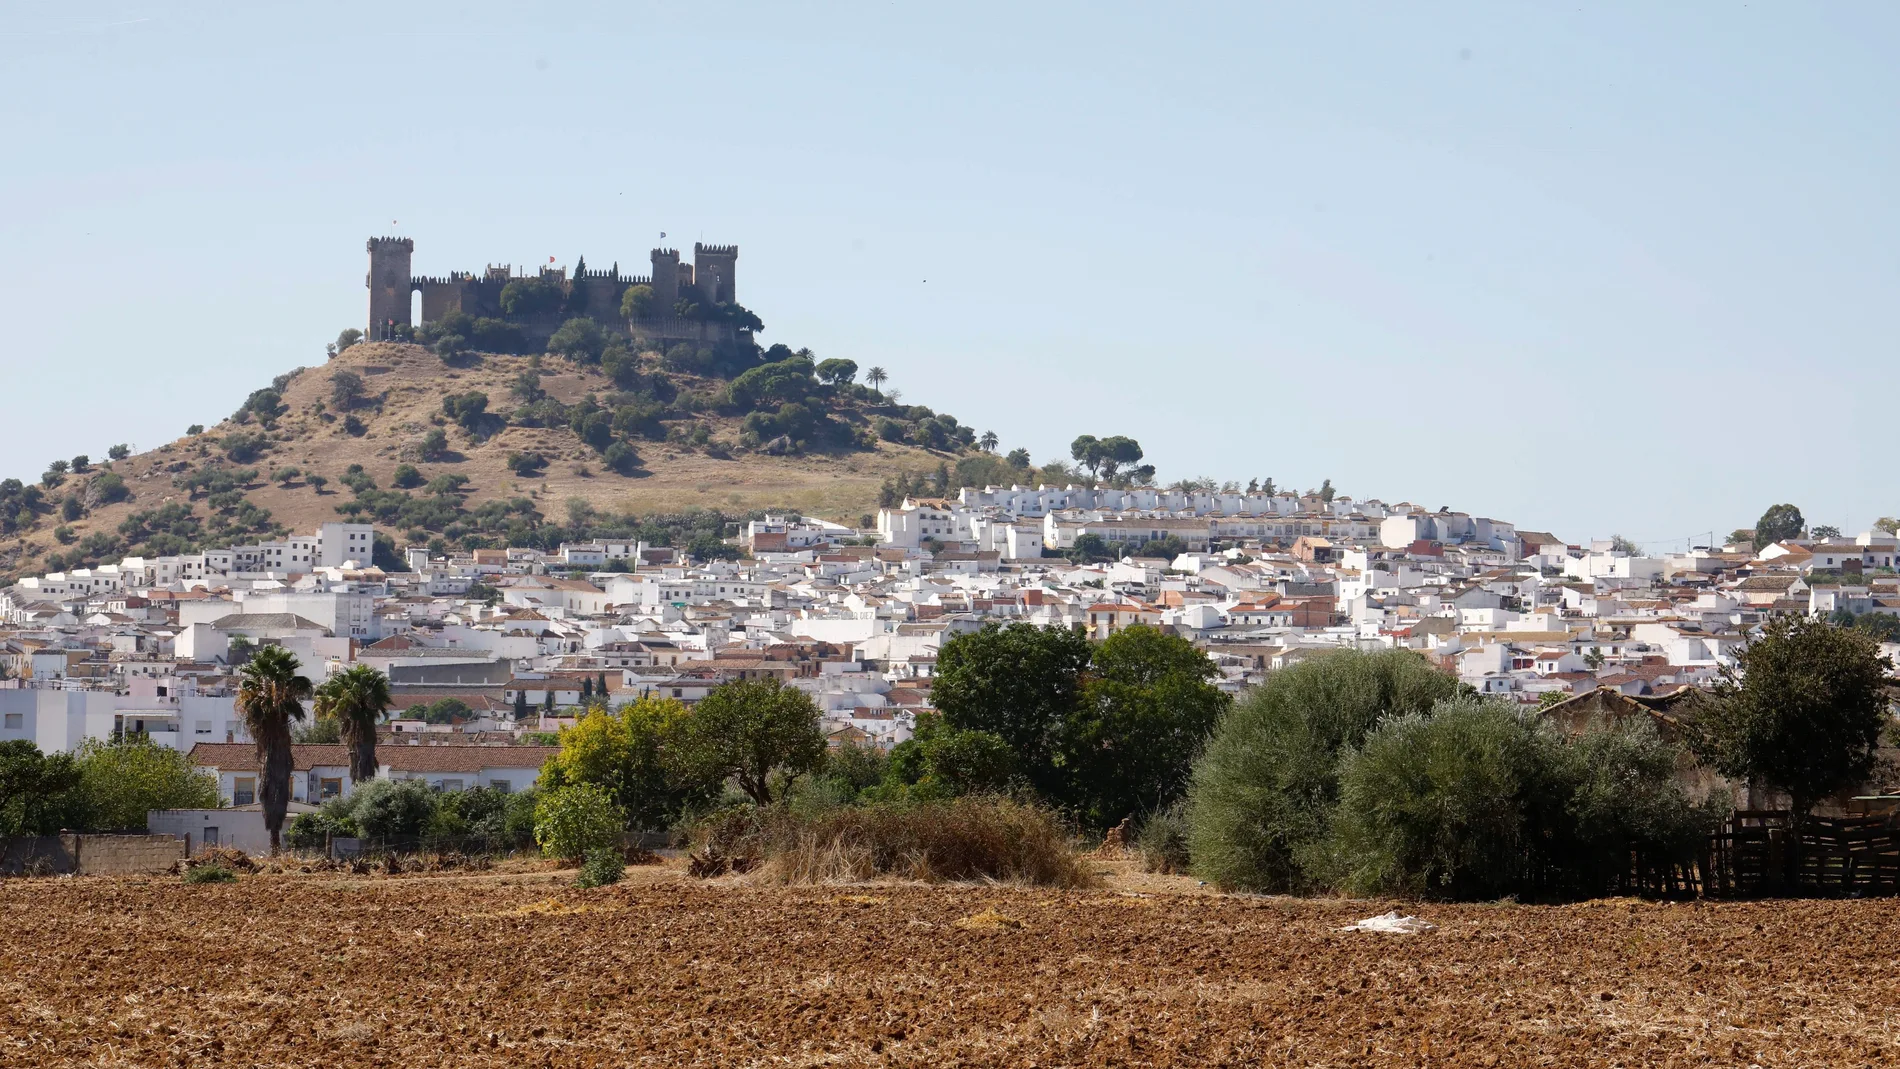 Esta semana la Junta de Andalucía ha decretado el confinamiento de Almodóvar del Río, en la provincia de Córdoba